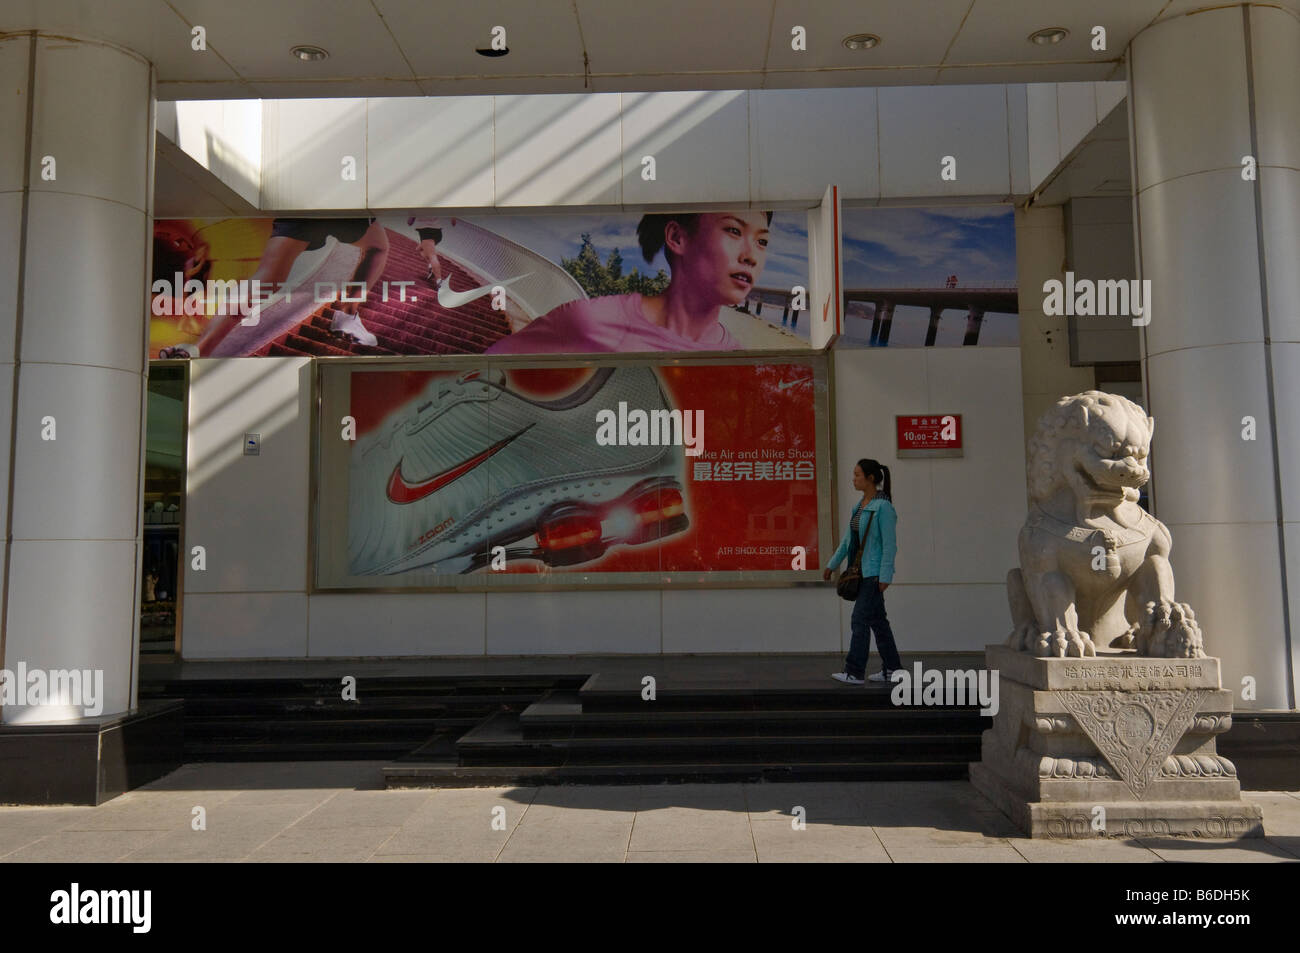 Nike china immagini e fotografie stock ad alta risoluzione - Alamy